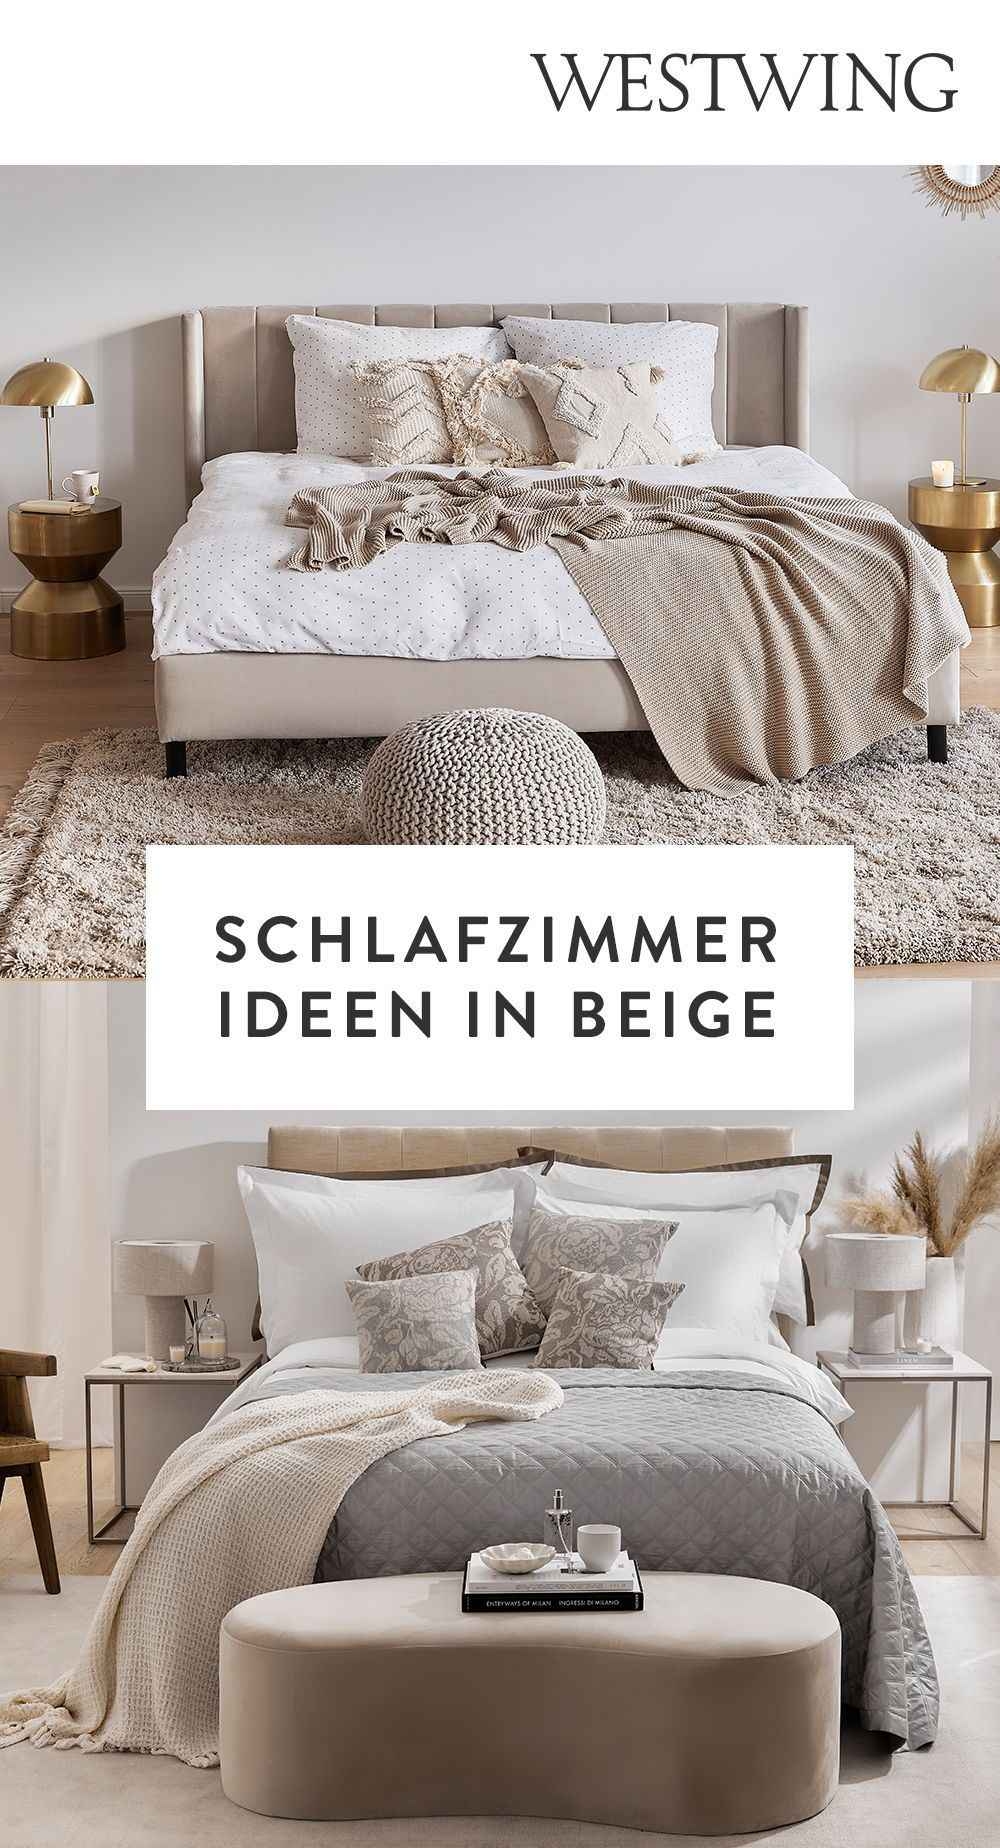 Schlafzimmer-Ideen: Natürlich Schön In Beige | Schlafzimmer within Schlafzimmer Deko Beige